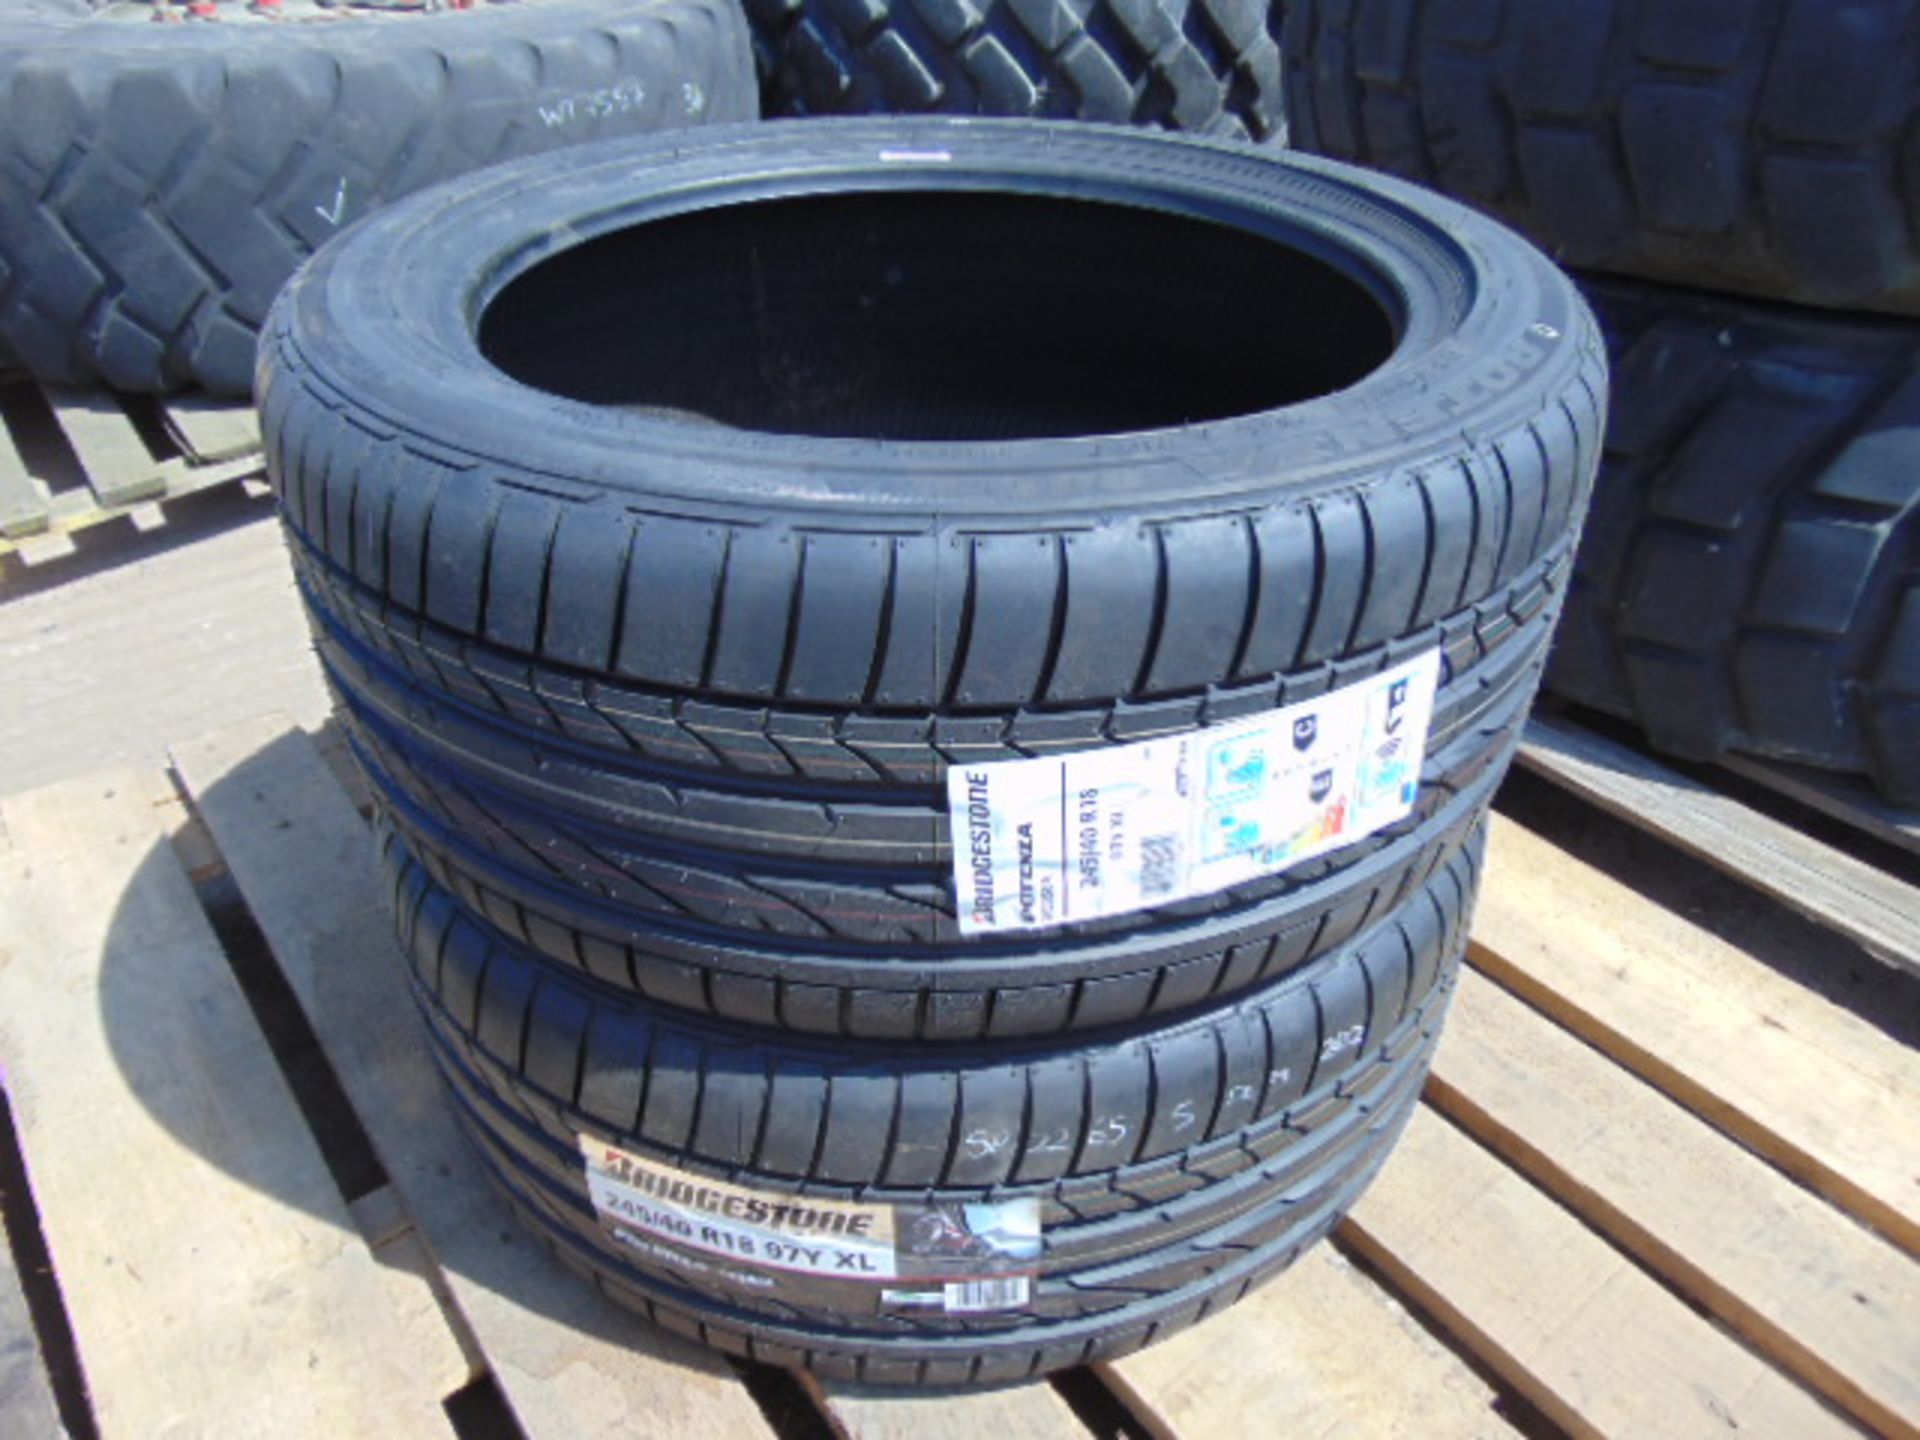 2 x Bridgestone Potenza 245/40 R18 97Y XL Tyres